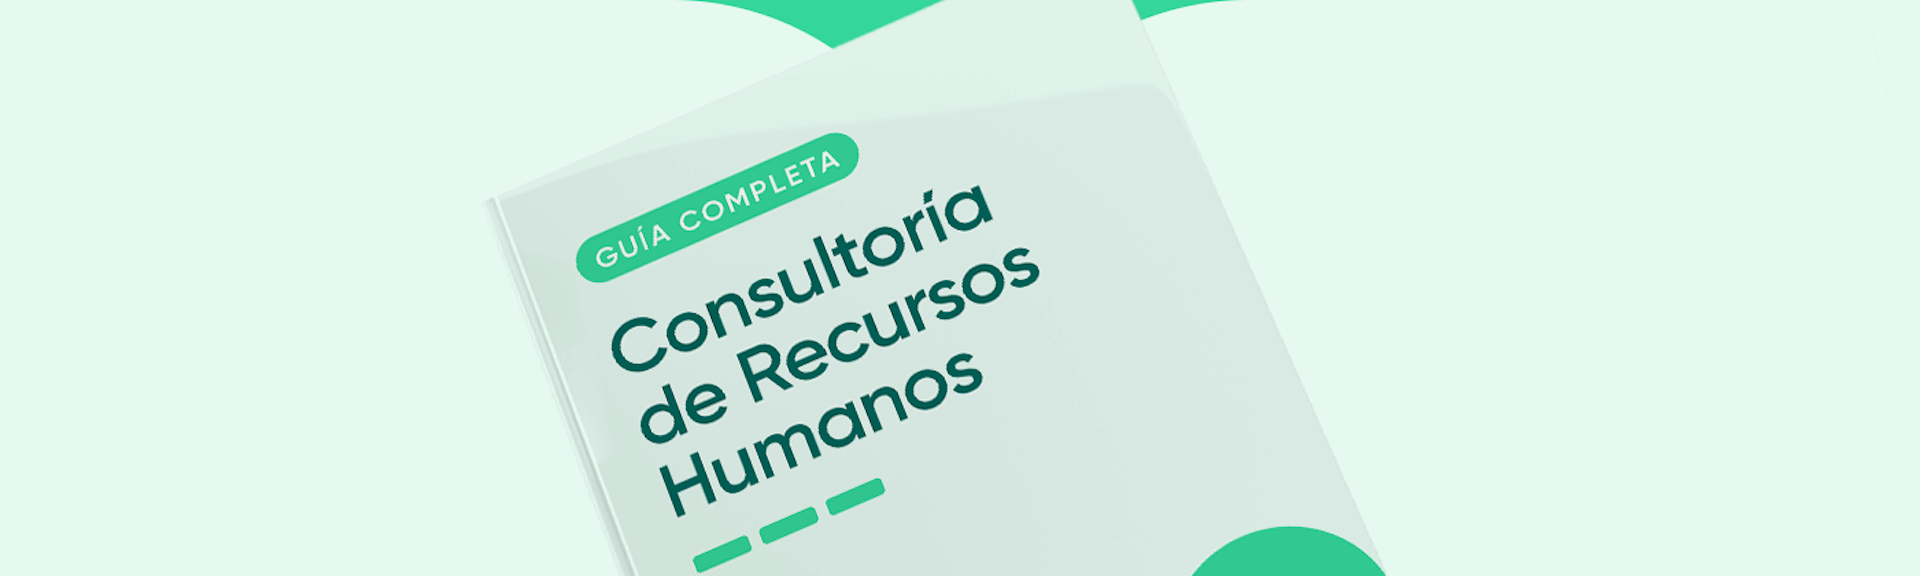 Consultoría de Recursos Humanos, la solución para acelerar tus procesos internos